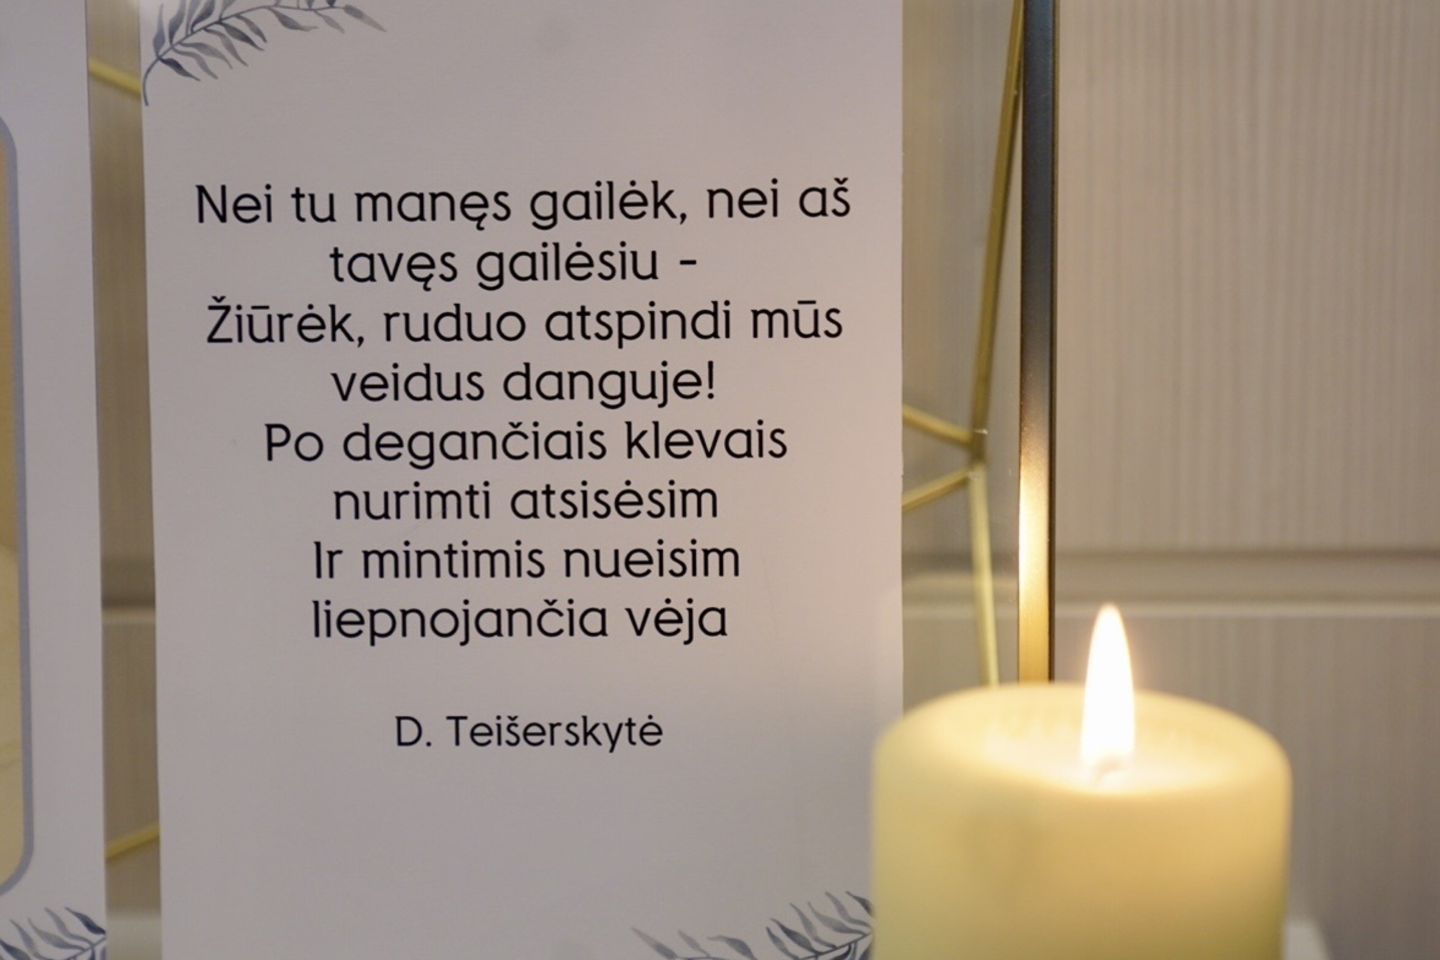  Kaune asisveikinama su Anapilin išėjusia poete Dalia Teišerskyte.